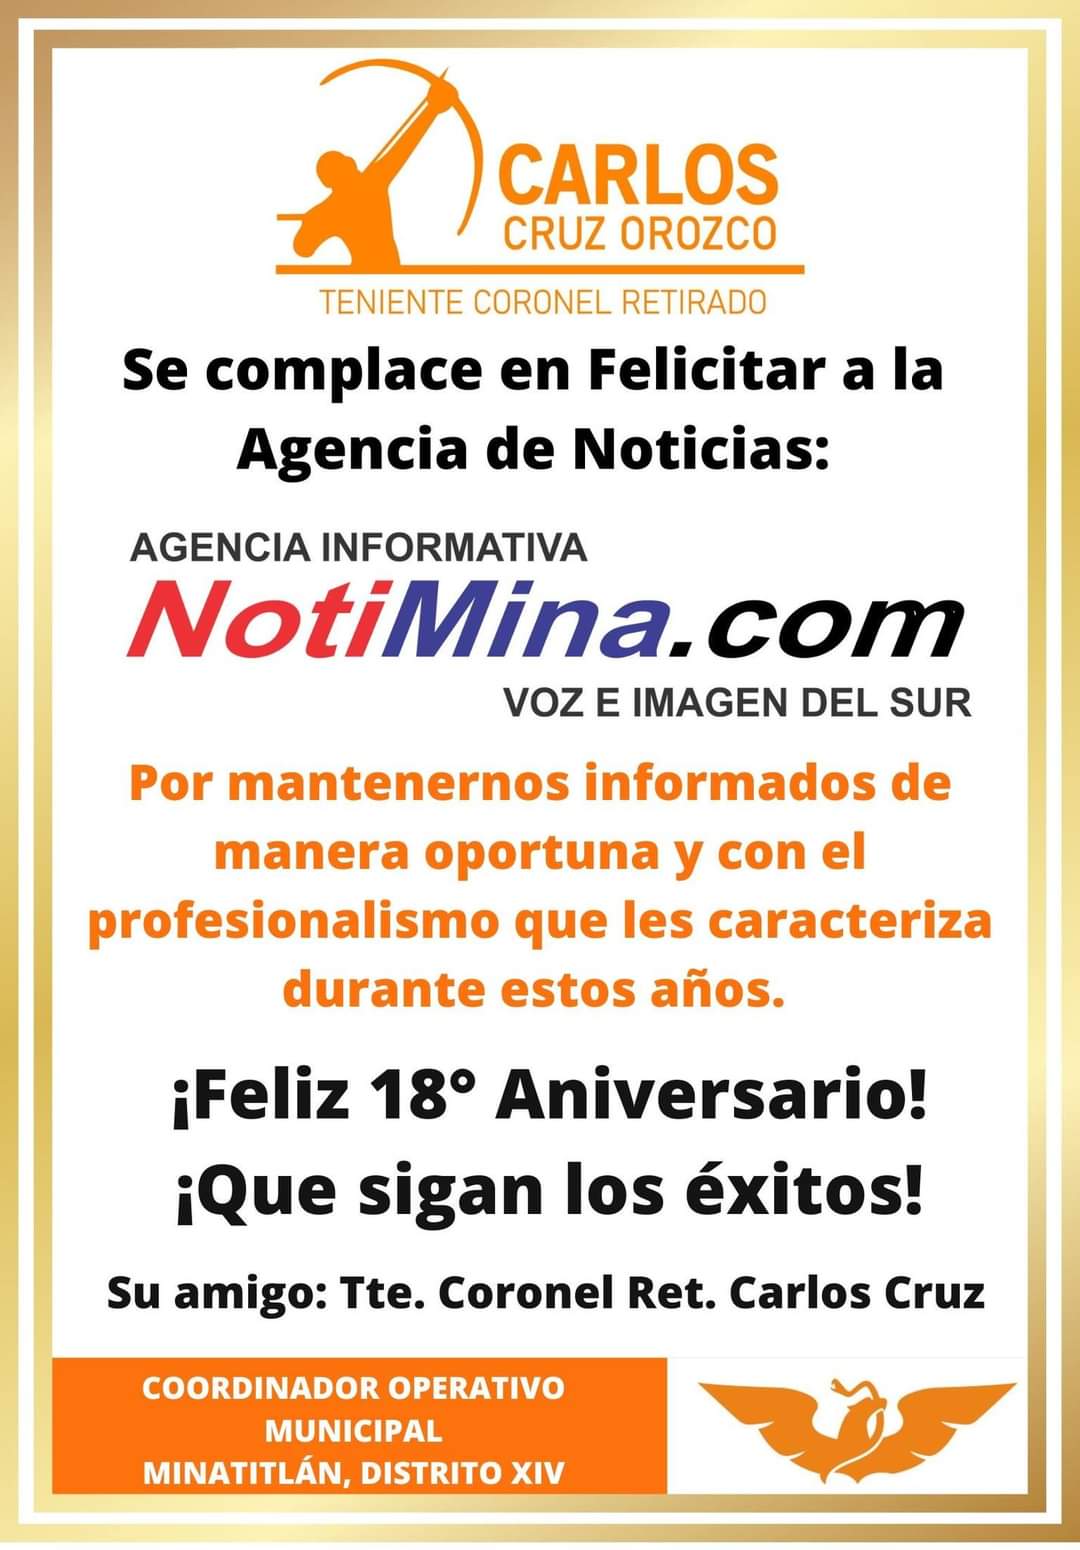 Agencia Informativa NotiMina